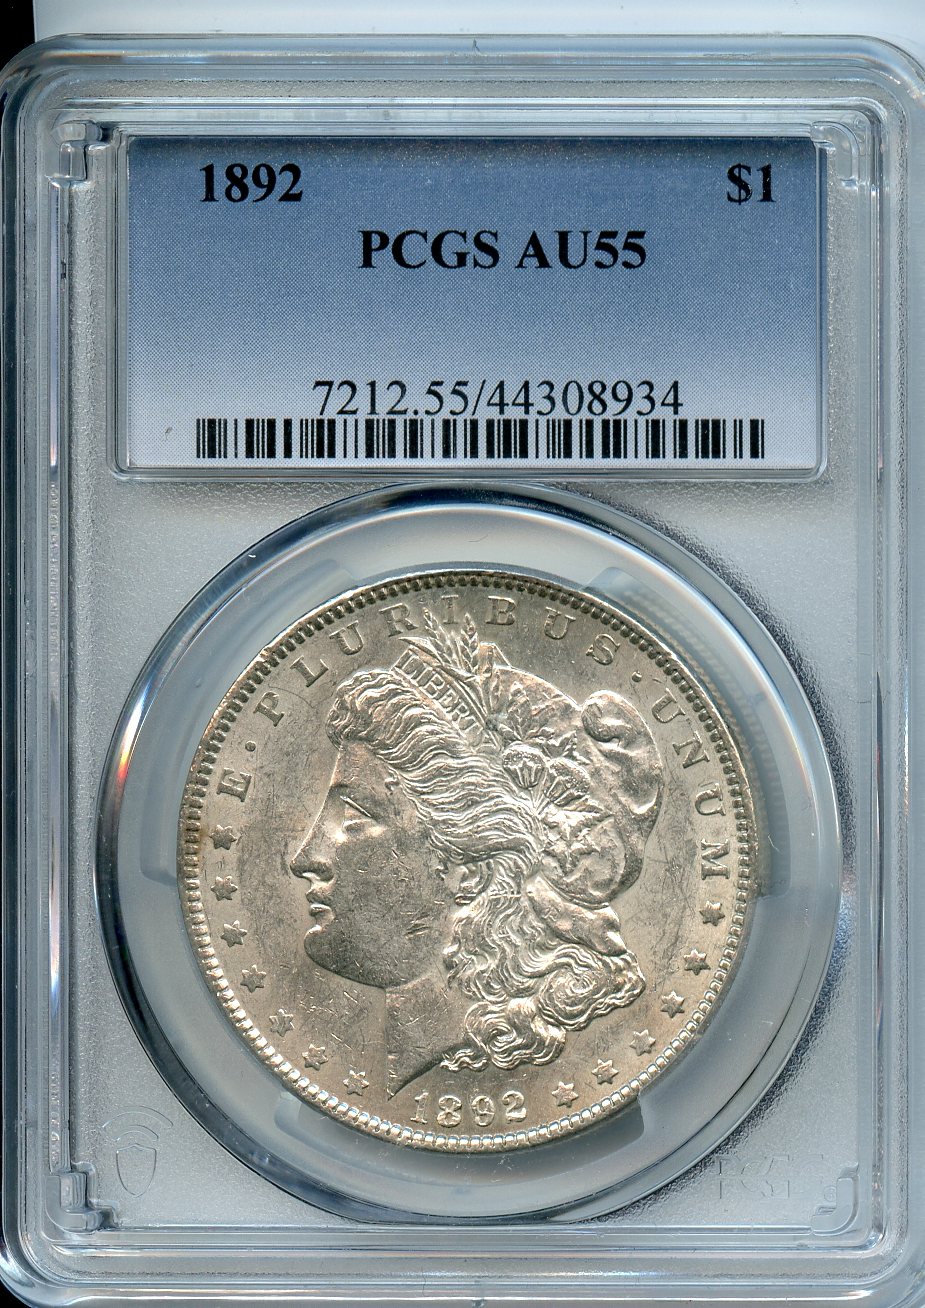 1892  $1  PCGS  AU55  Morgan Dollar